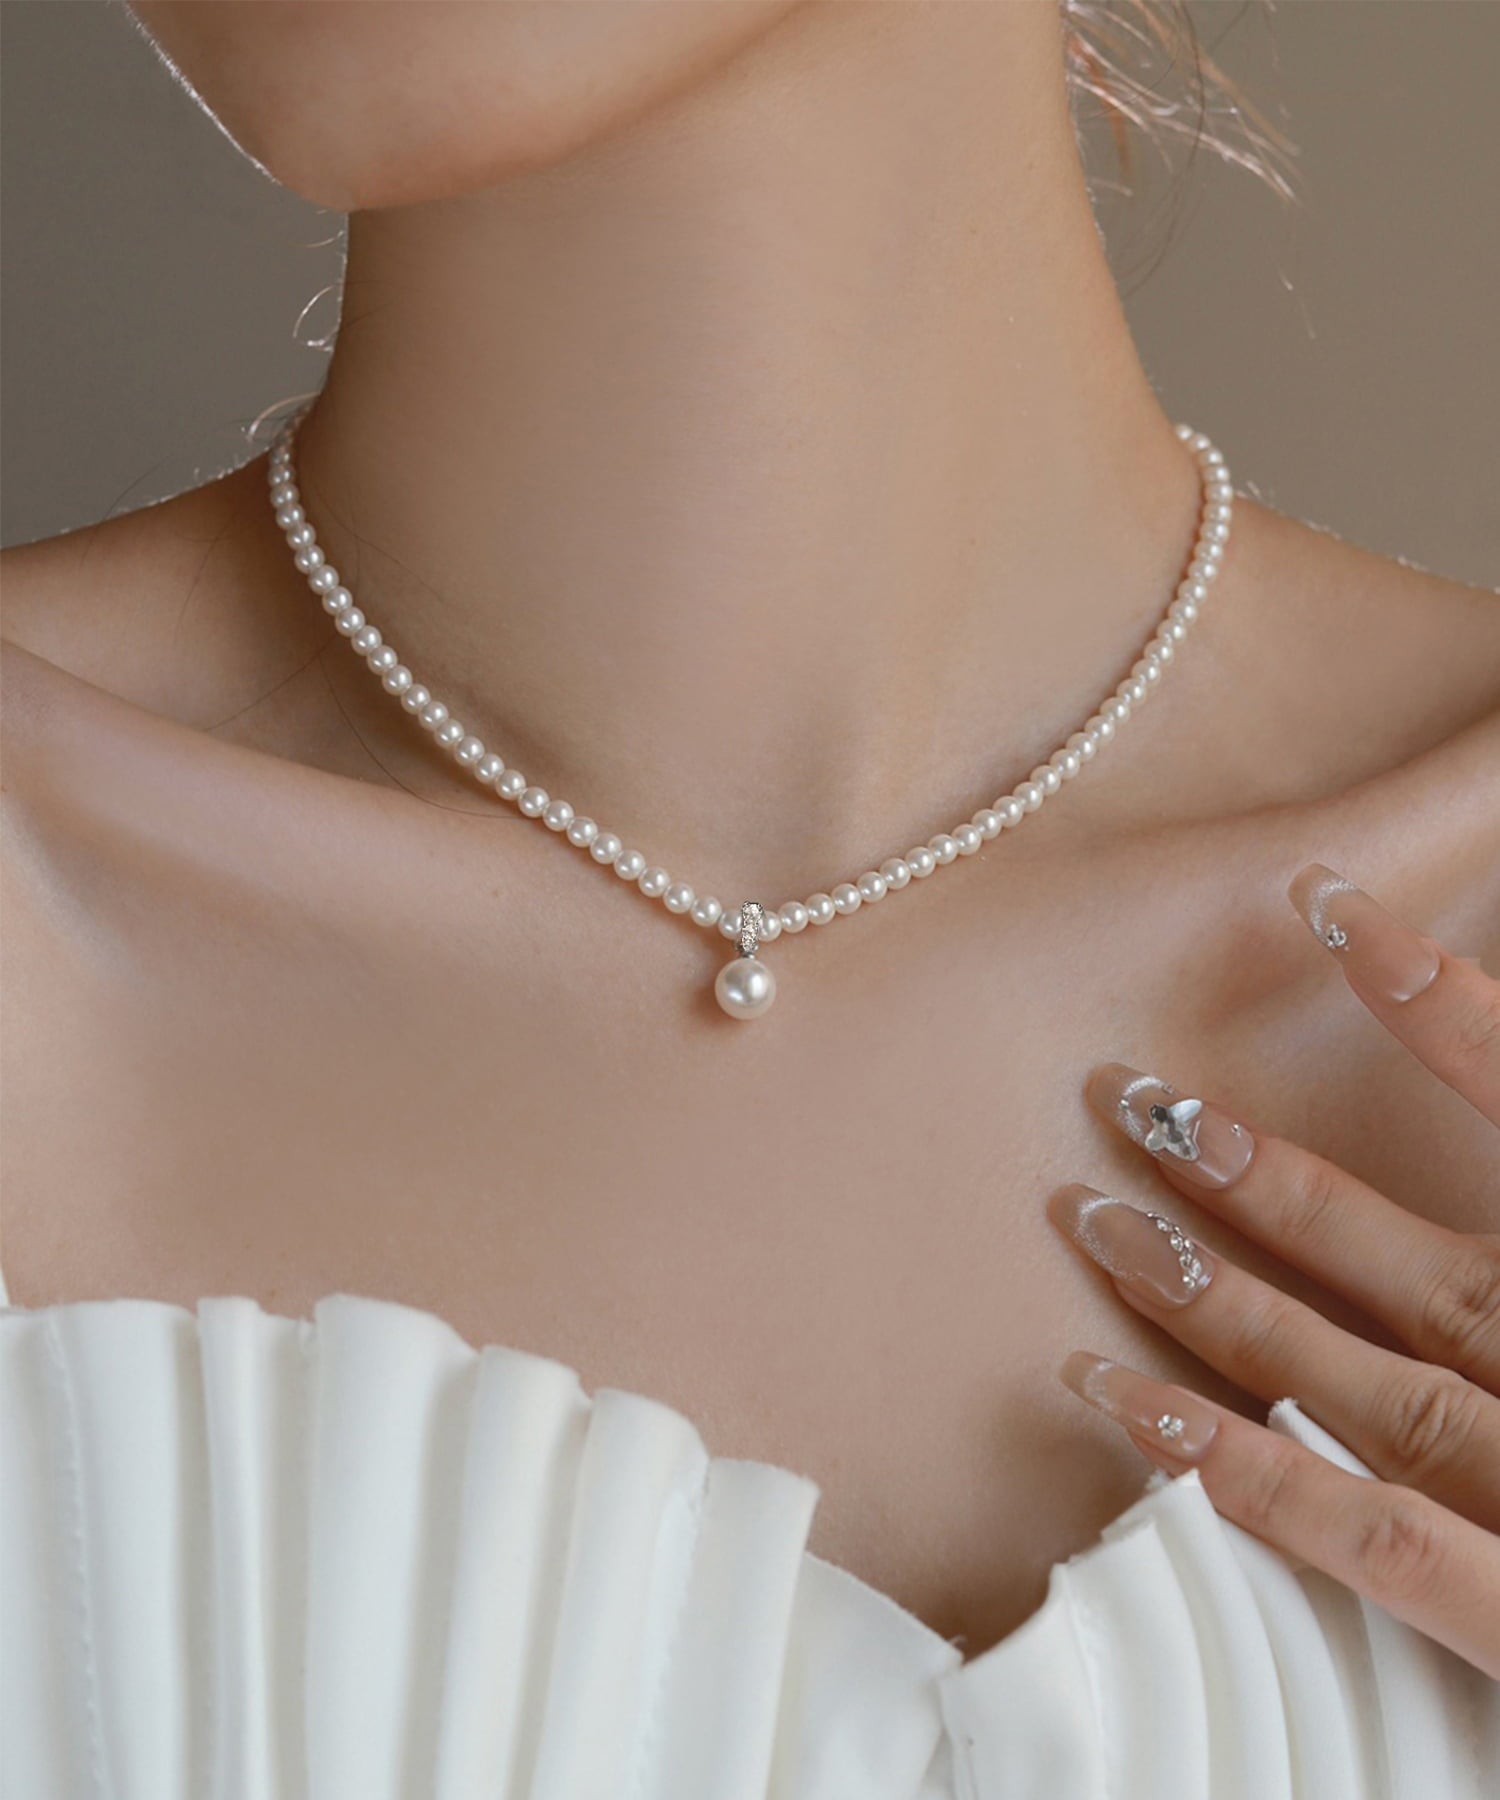 【当日発送】LEJA-クラシックパール真珠ネックレス結婚式 お呼ばれネックレス